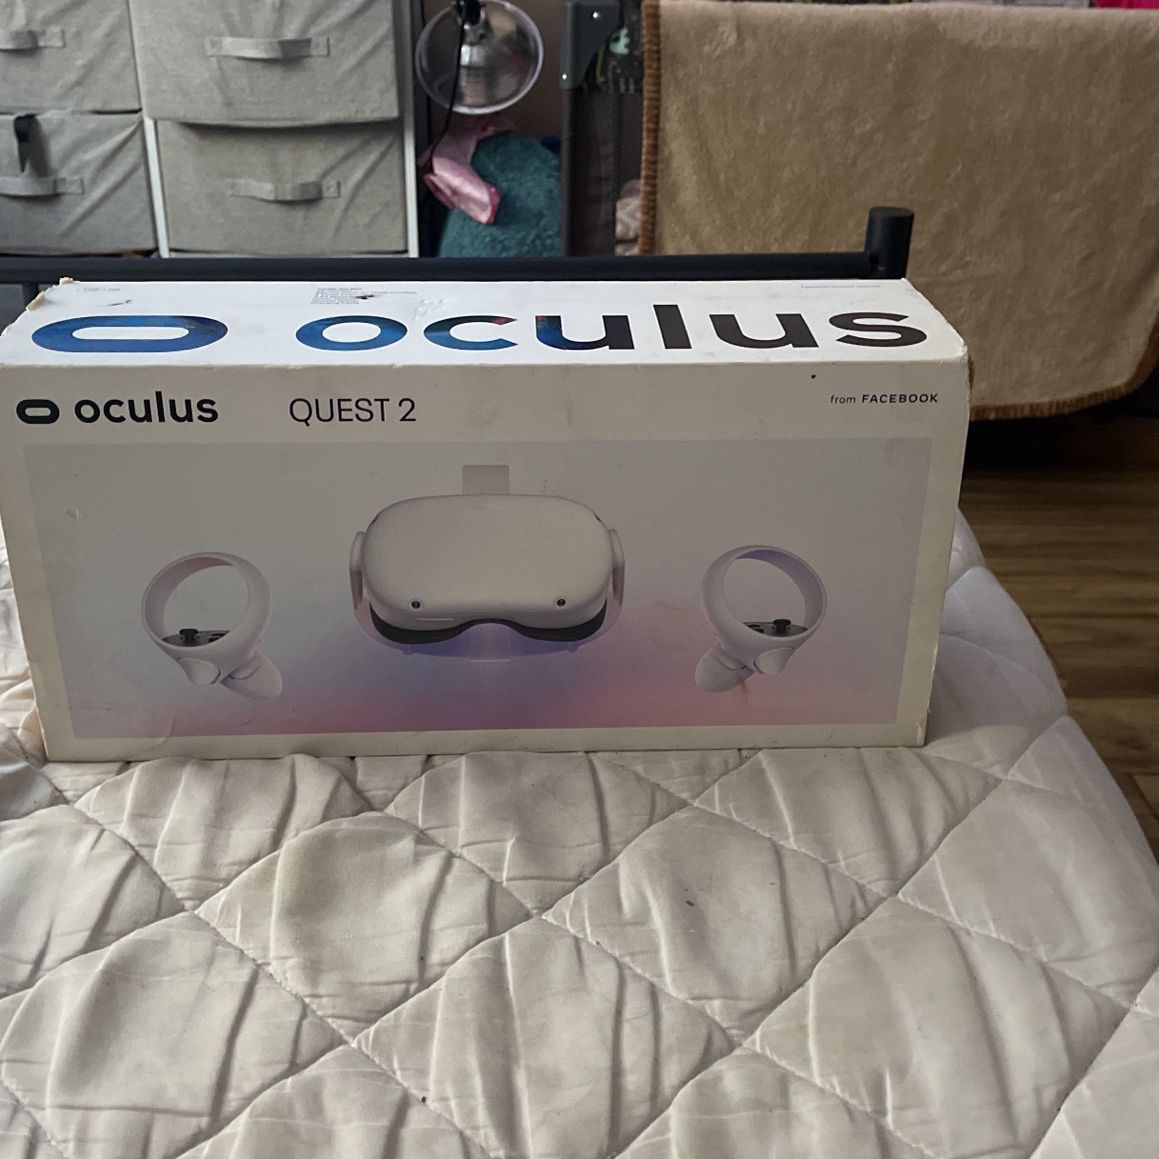 Oculus 